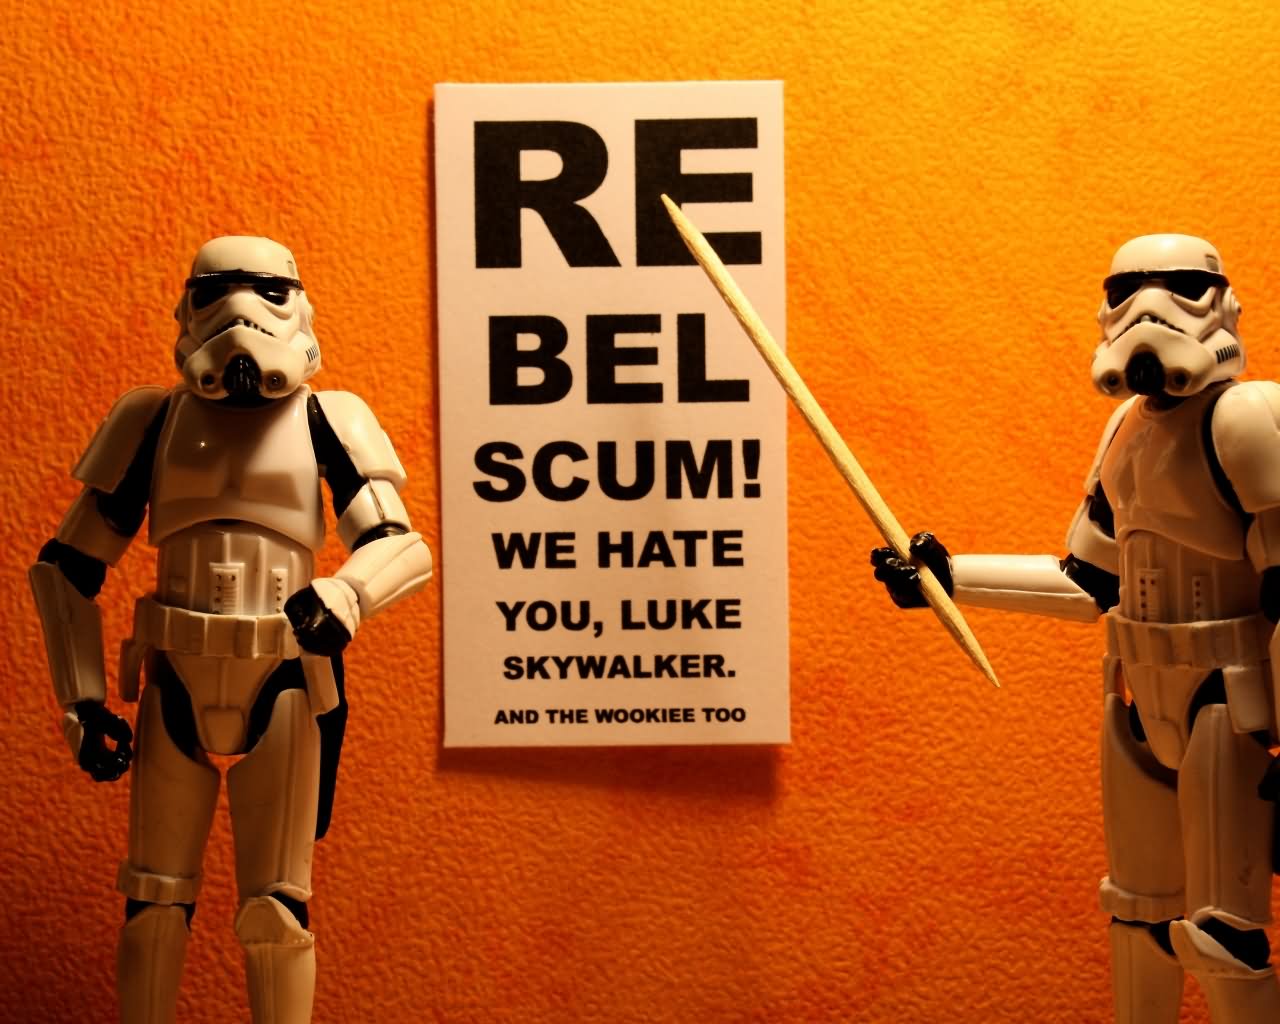 We Hate You Luke Skywalker Funny Star Wars Image